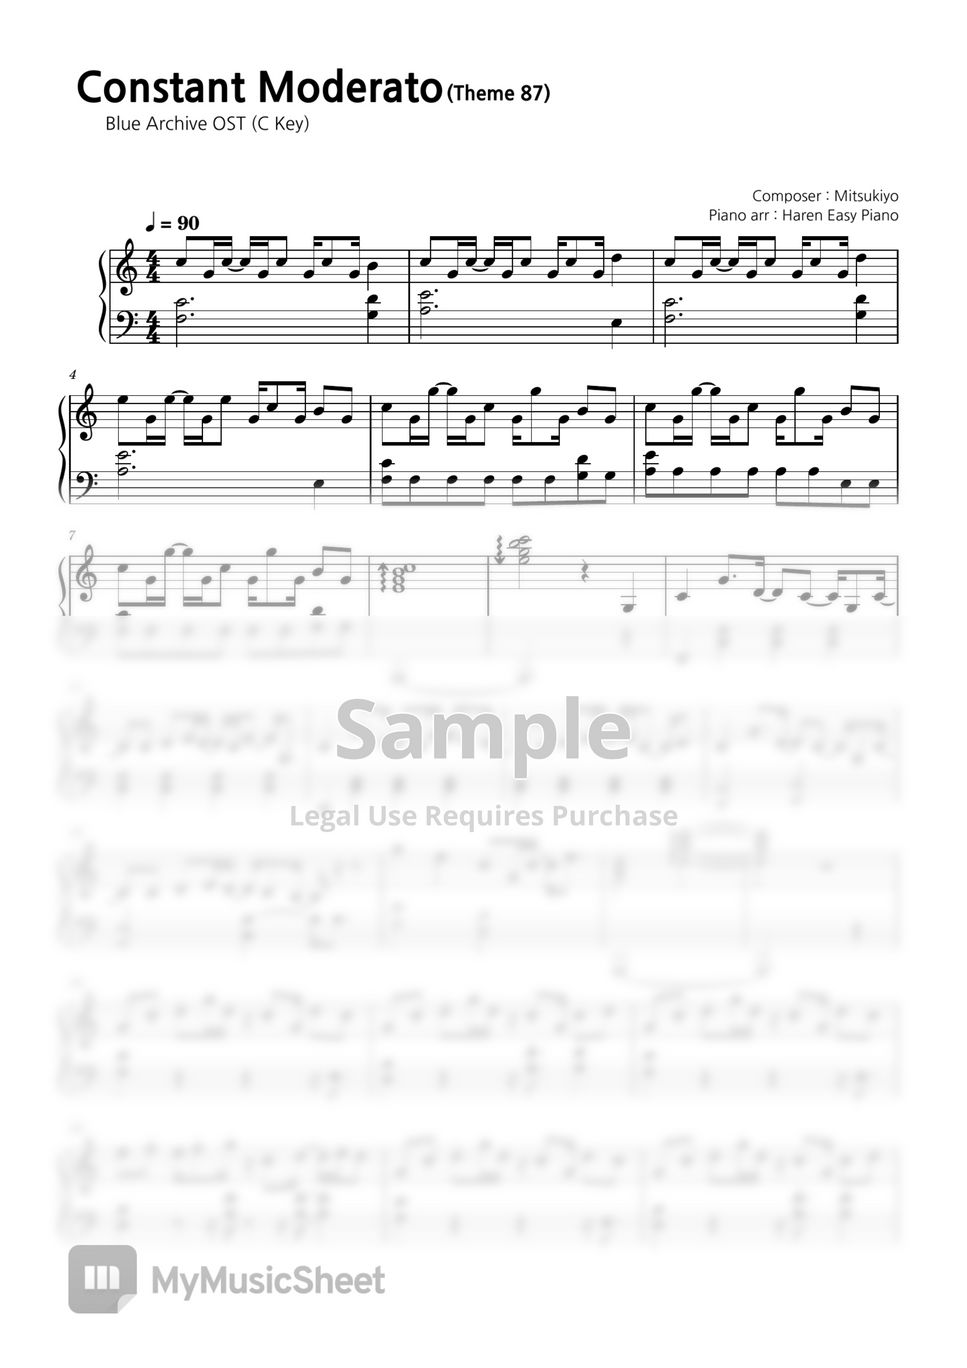 블루 아카이브 OST - Constant Moderato (원키 + C키) by Haren Easy Piano